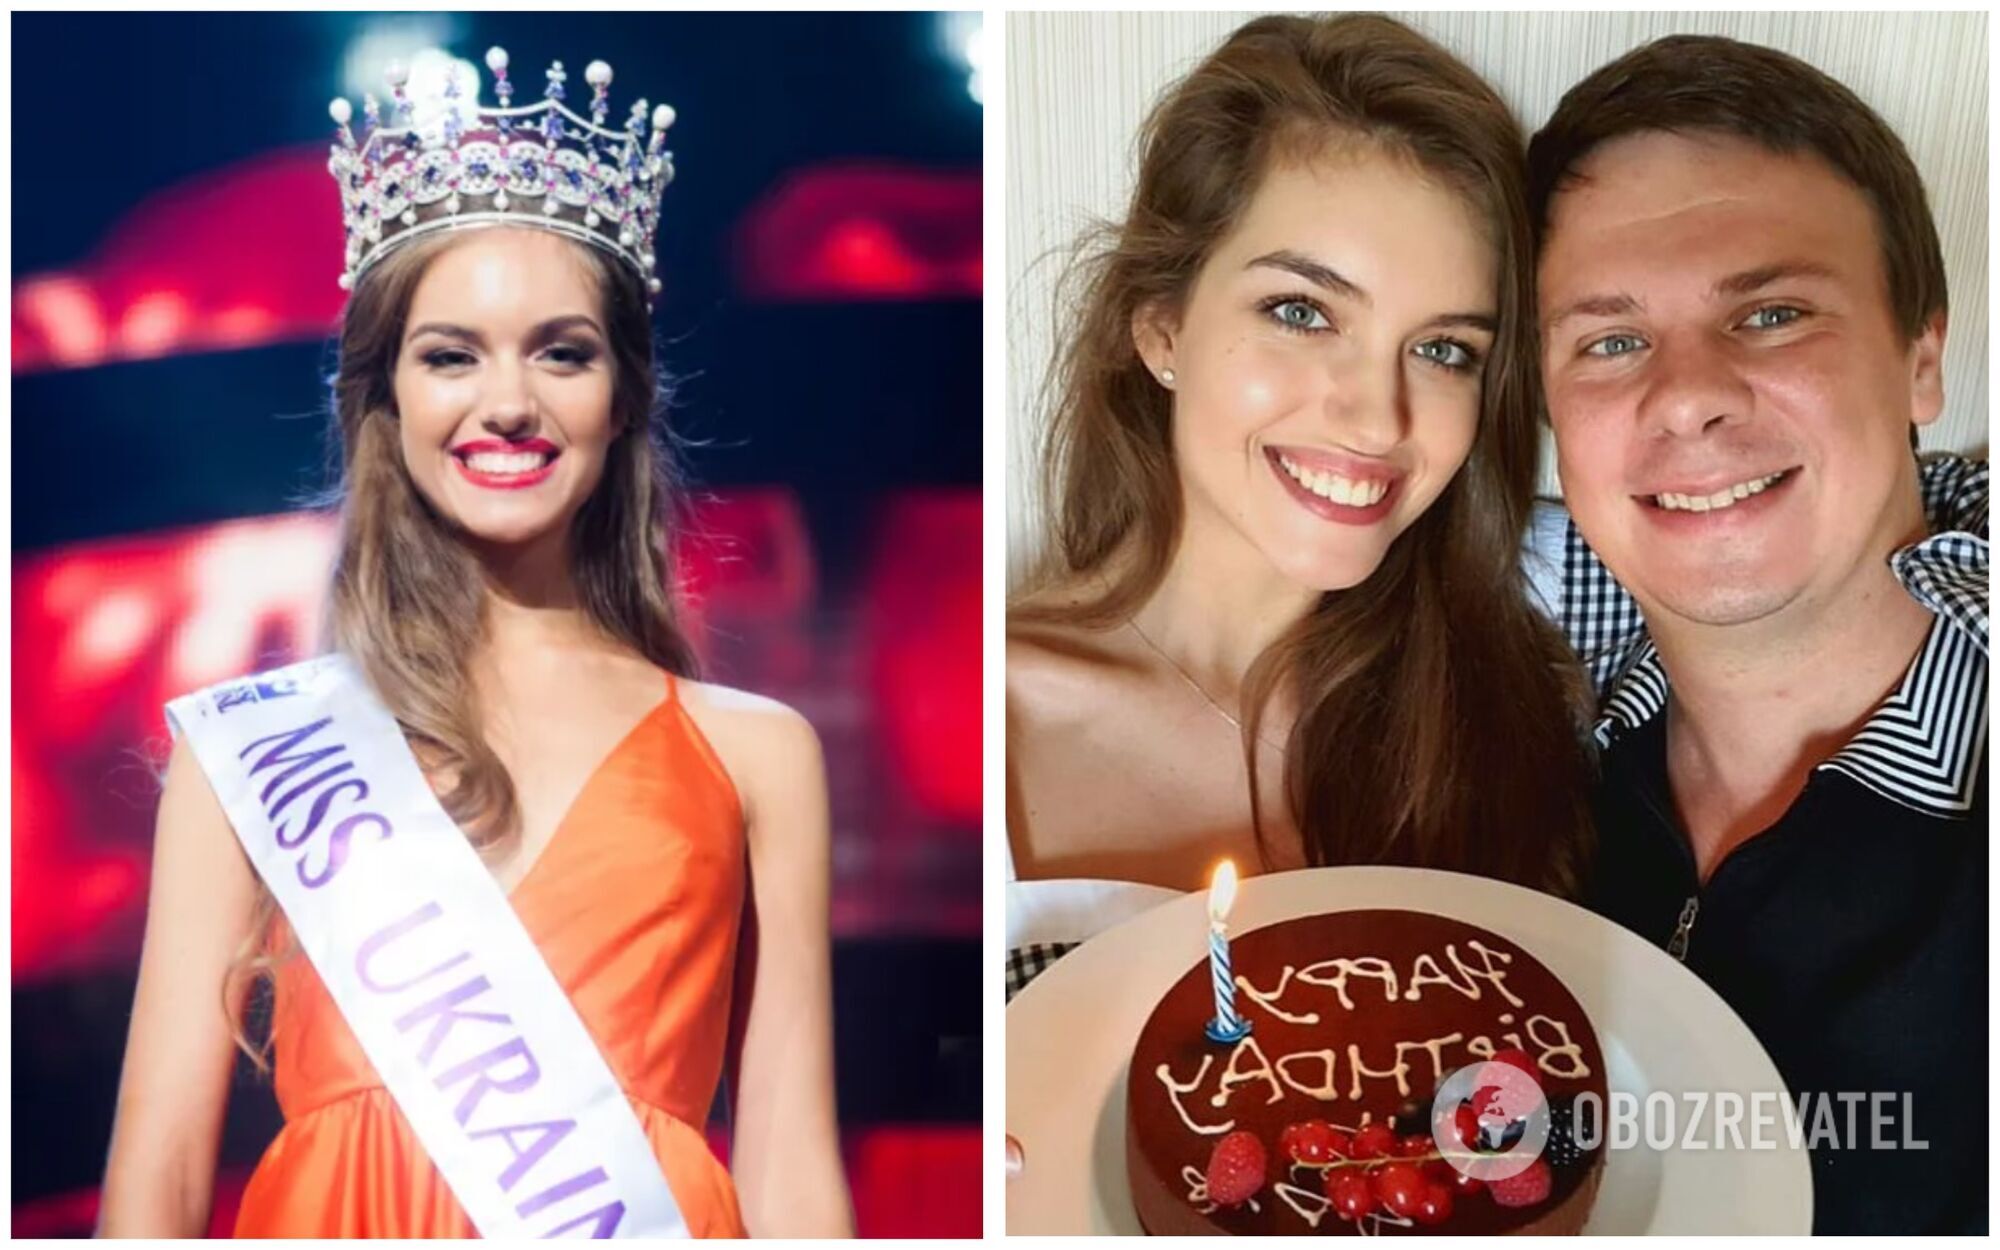 "Мисс Украина" 2016 года Александра Кучеренко вышла замуж за известного телеведущего Дмитрия Комарова